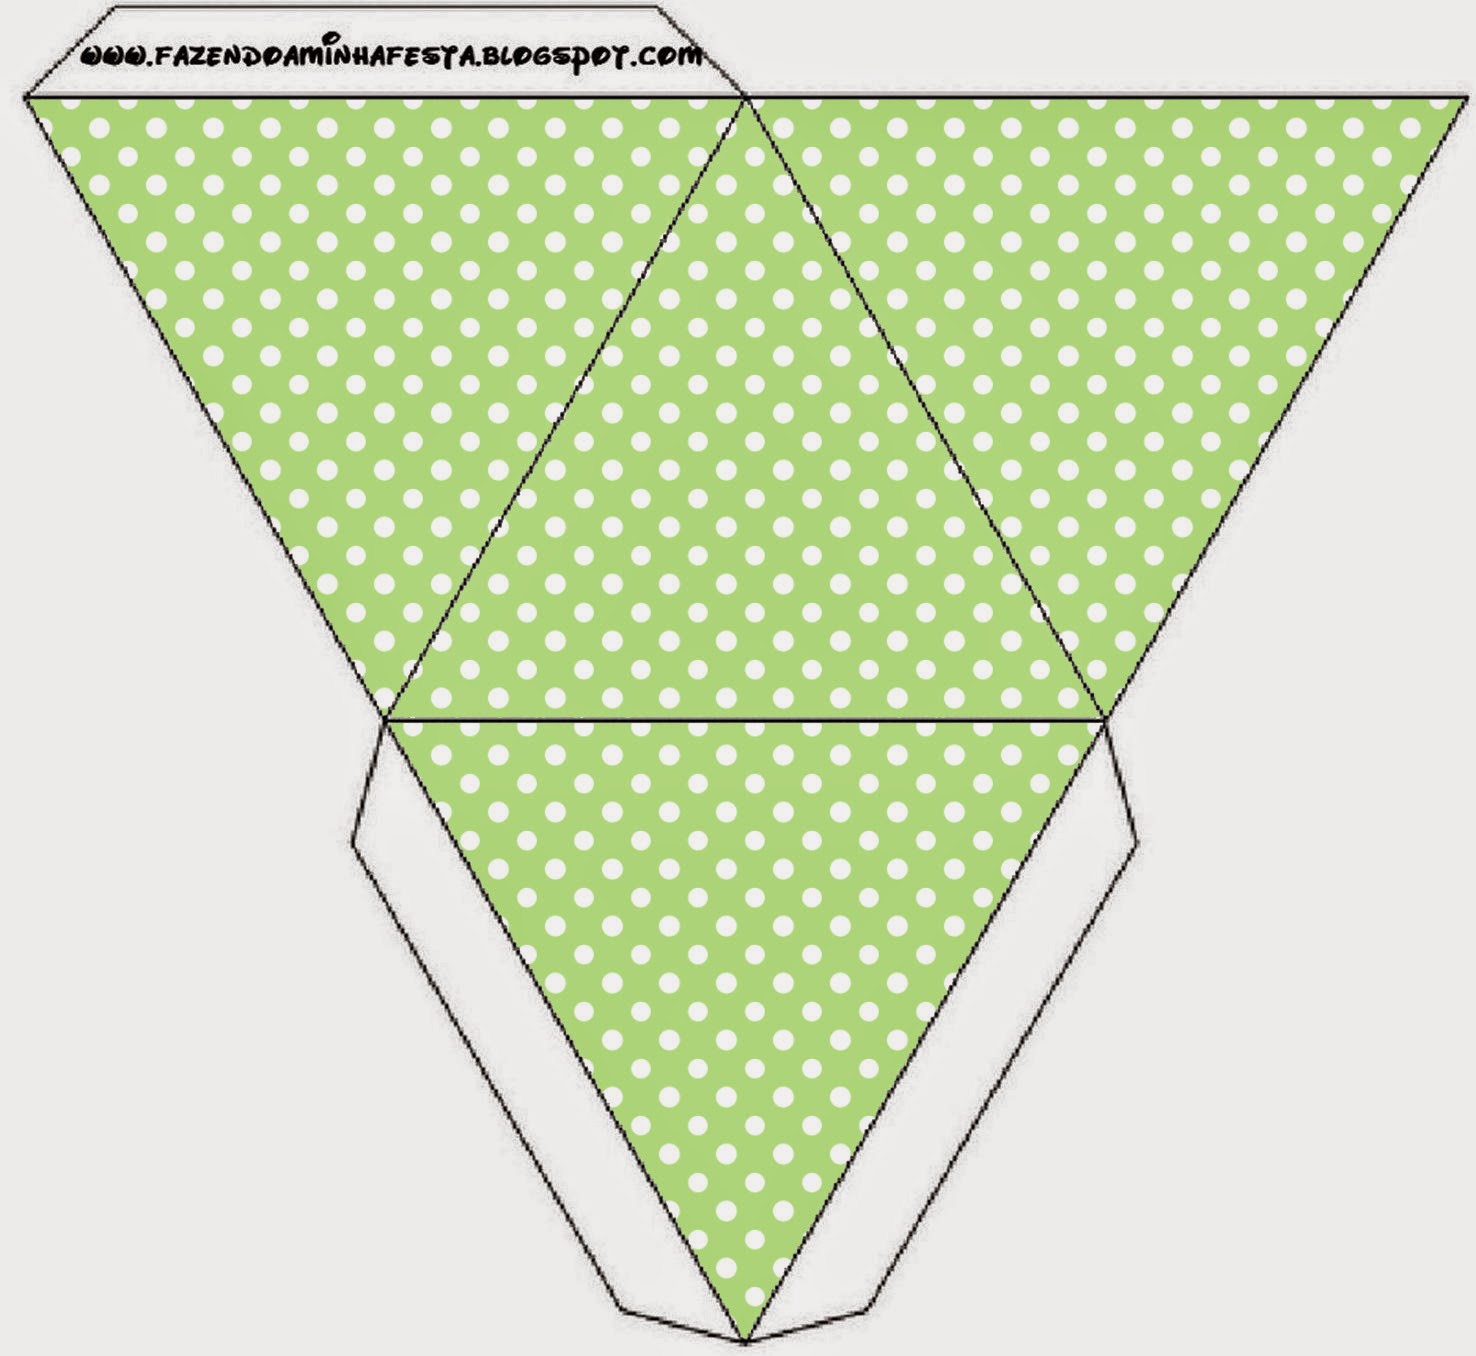 Caja con forma de pirámide de Verde y Celeste.